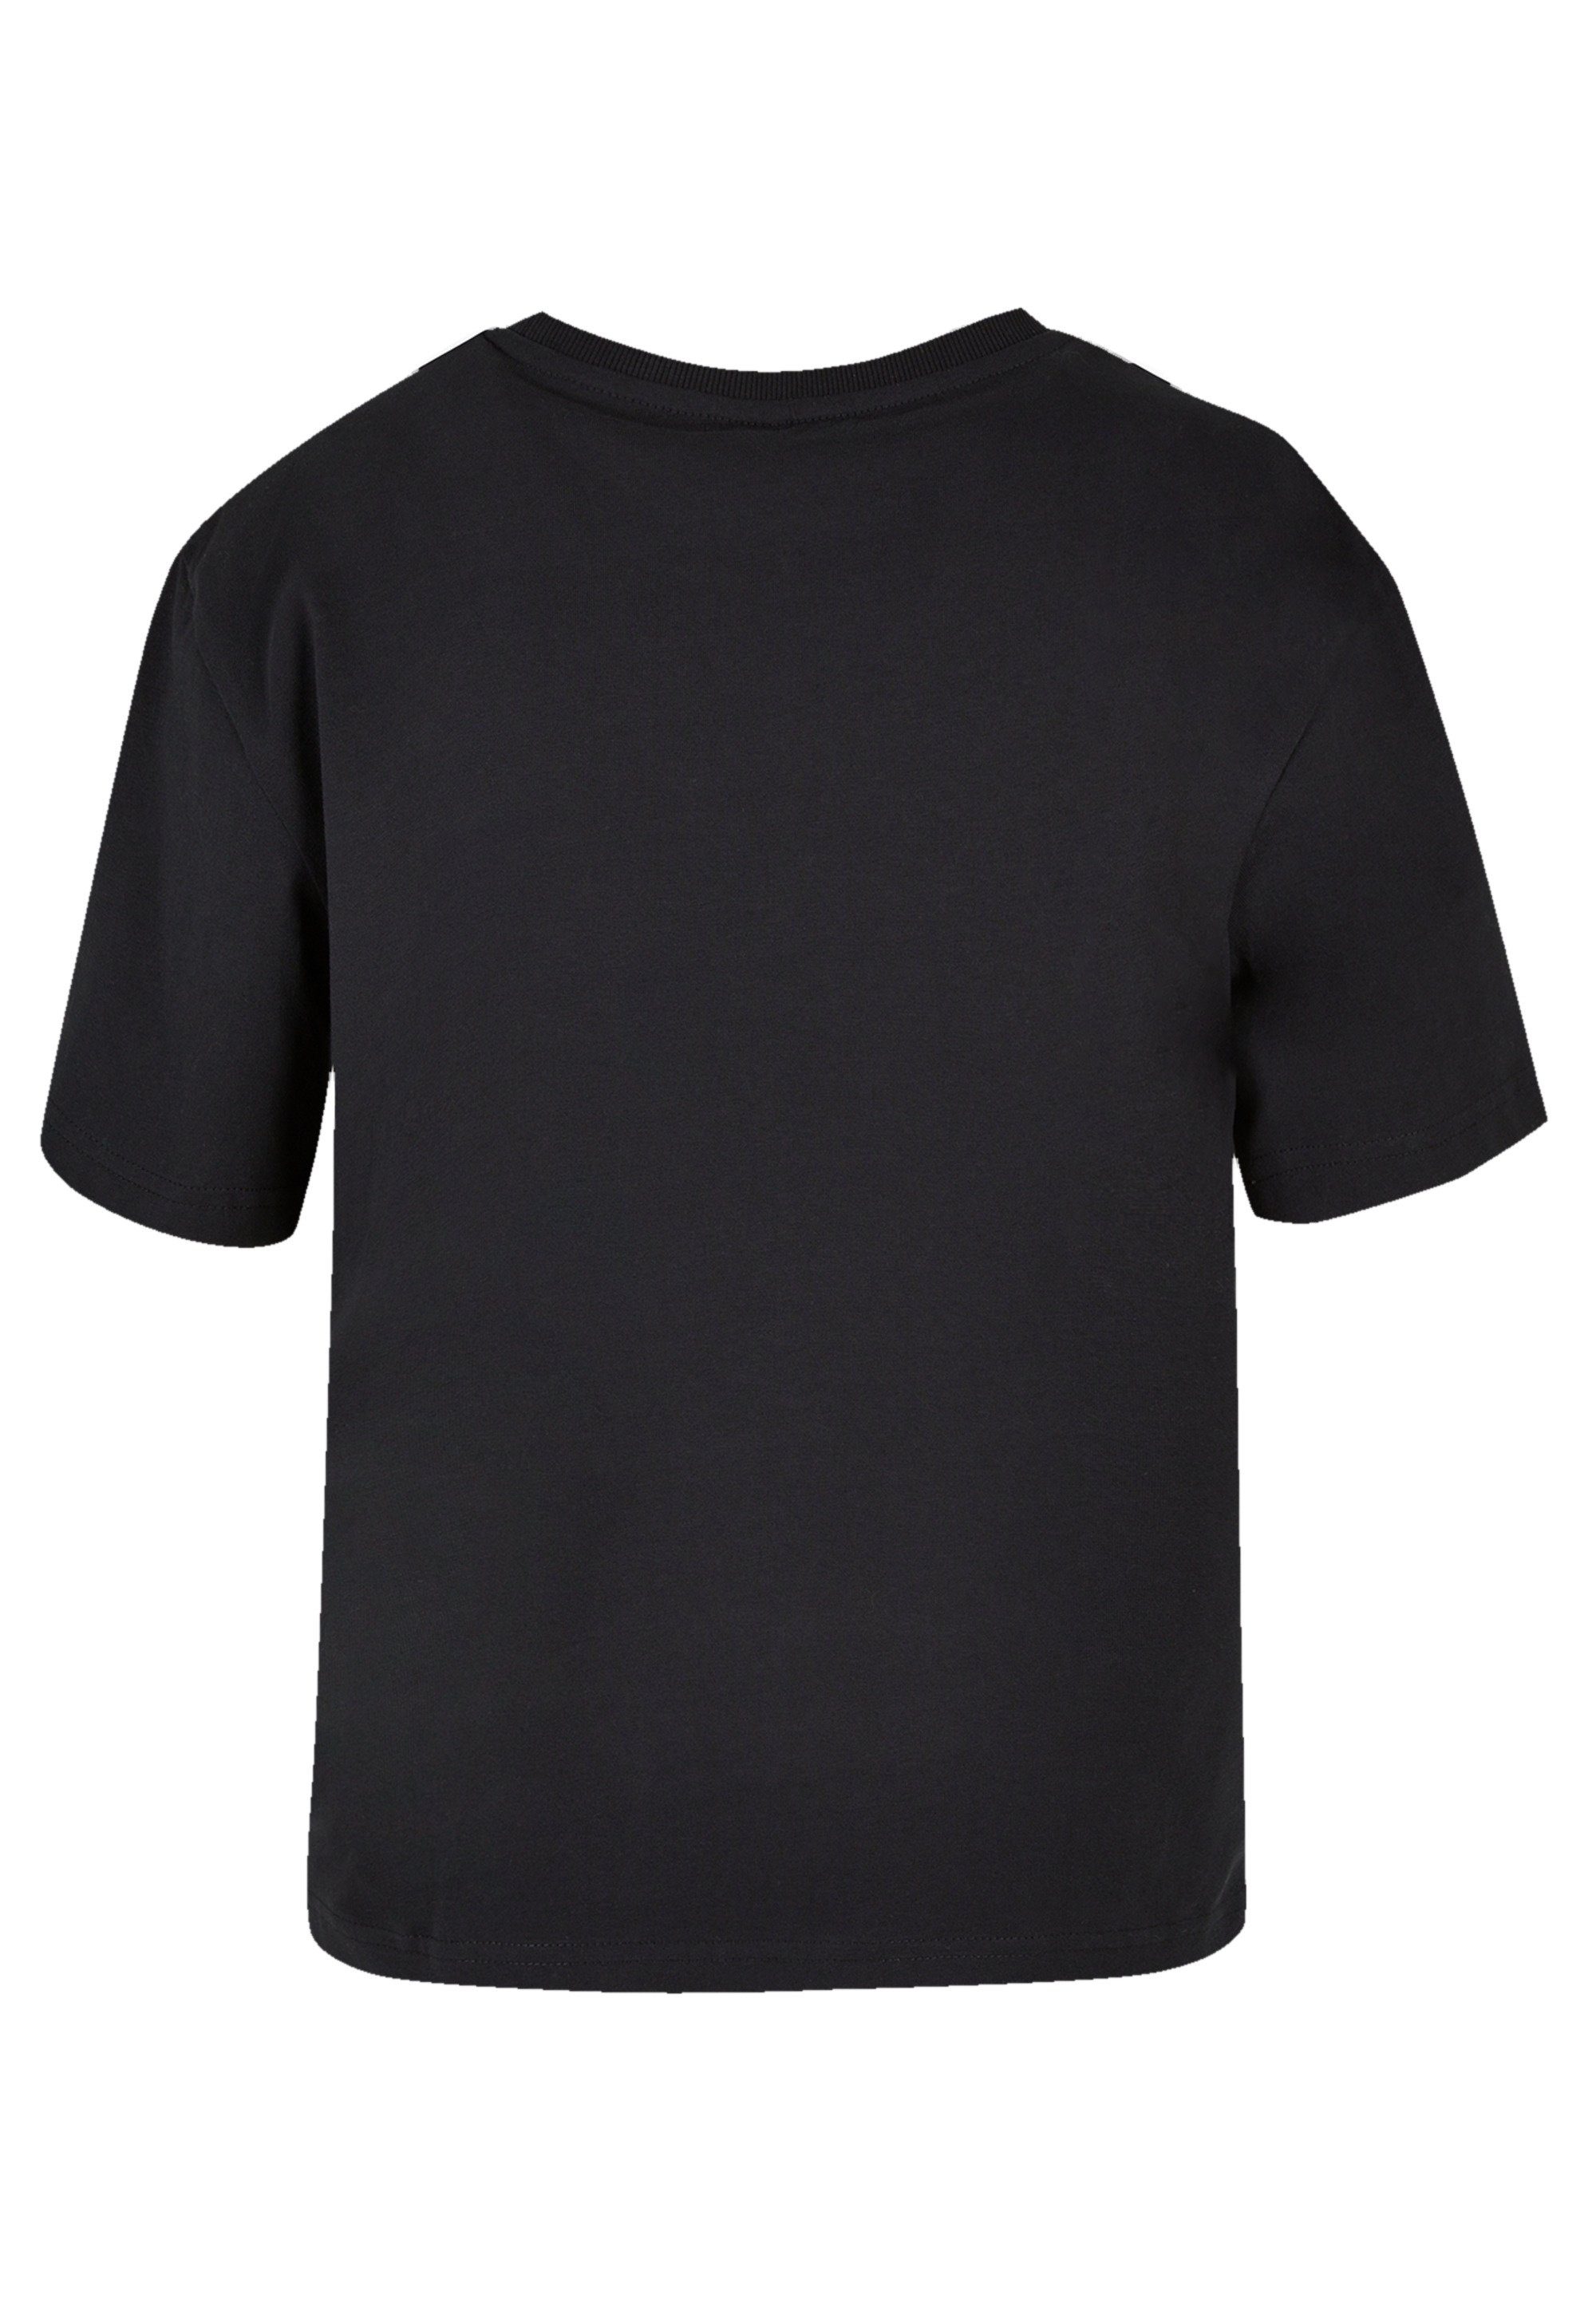 F4NT4STIC T-Shirt Disney Lilo & Stitch Heartbreaker Premium Qualität,  Komfortabel und vielseitig kombinierbar | T-Shirts